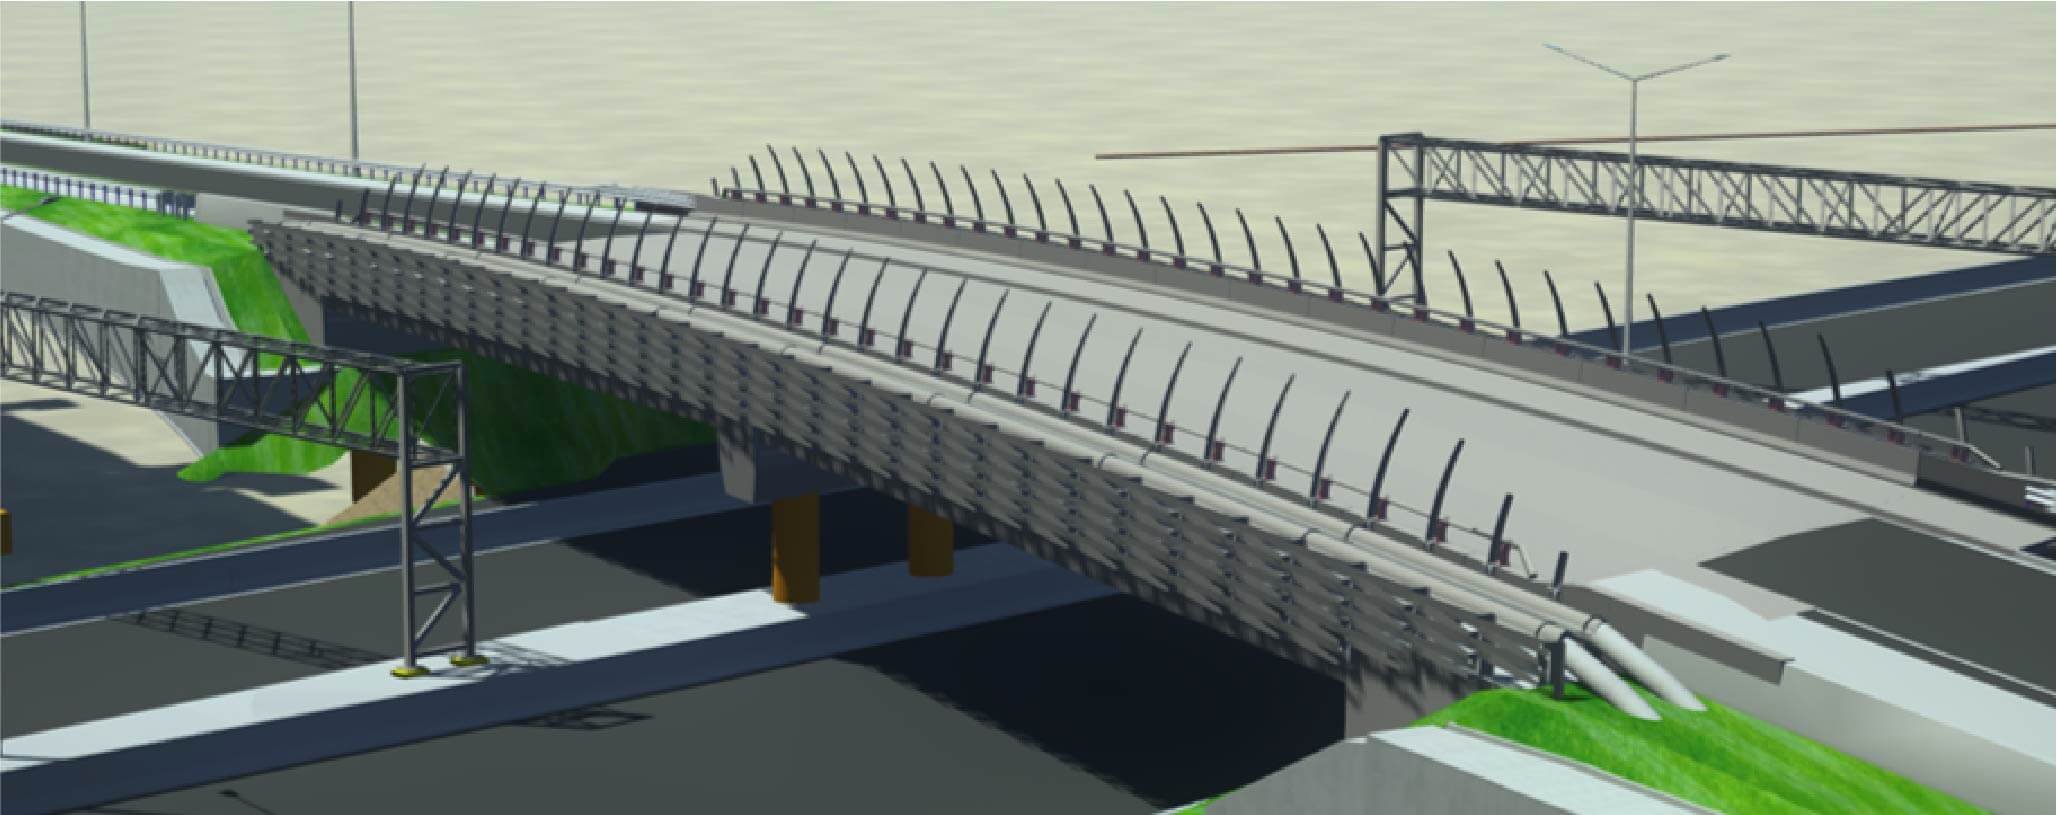 Replacement of Park Estate Road bridge